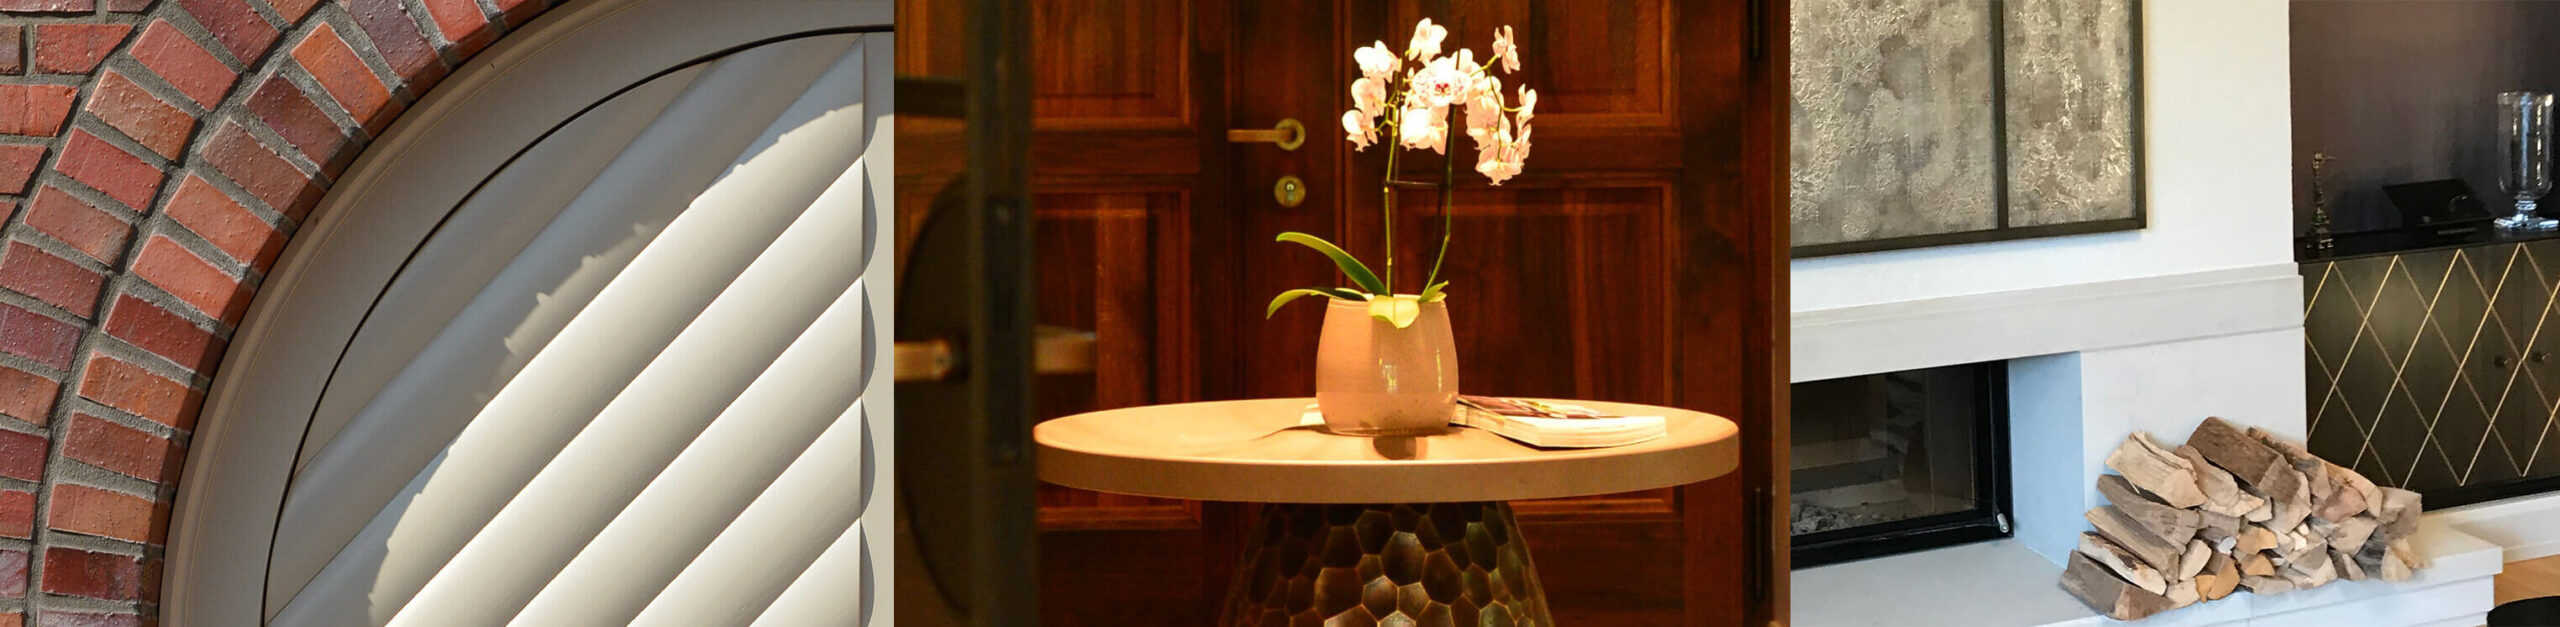 3er Collage Portal, Orchidee auf Tisch und Holz am Kamin